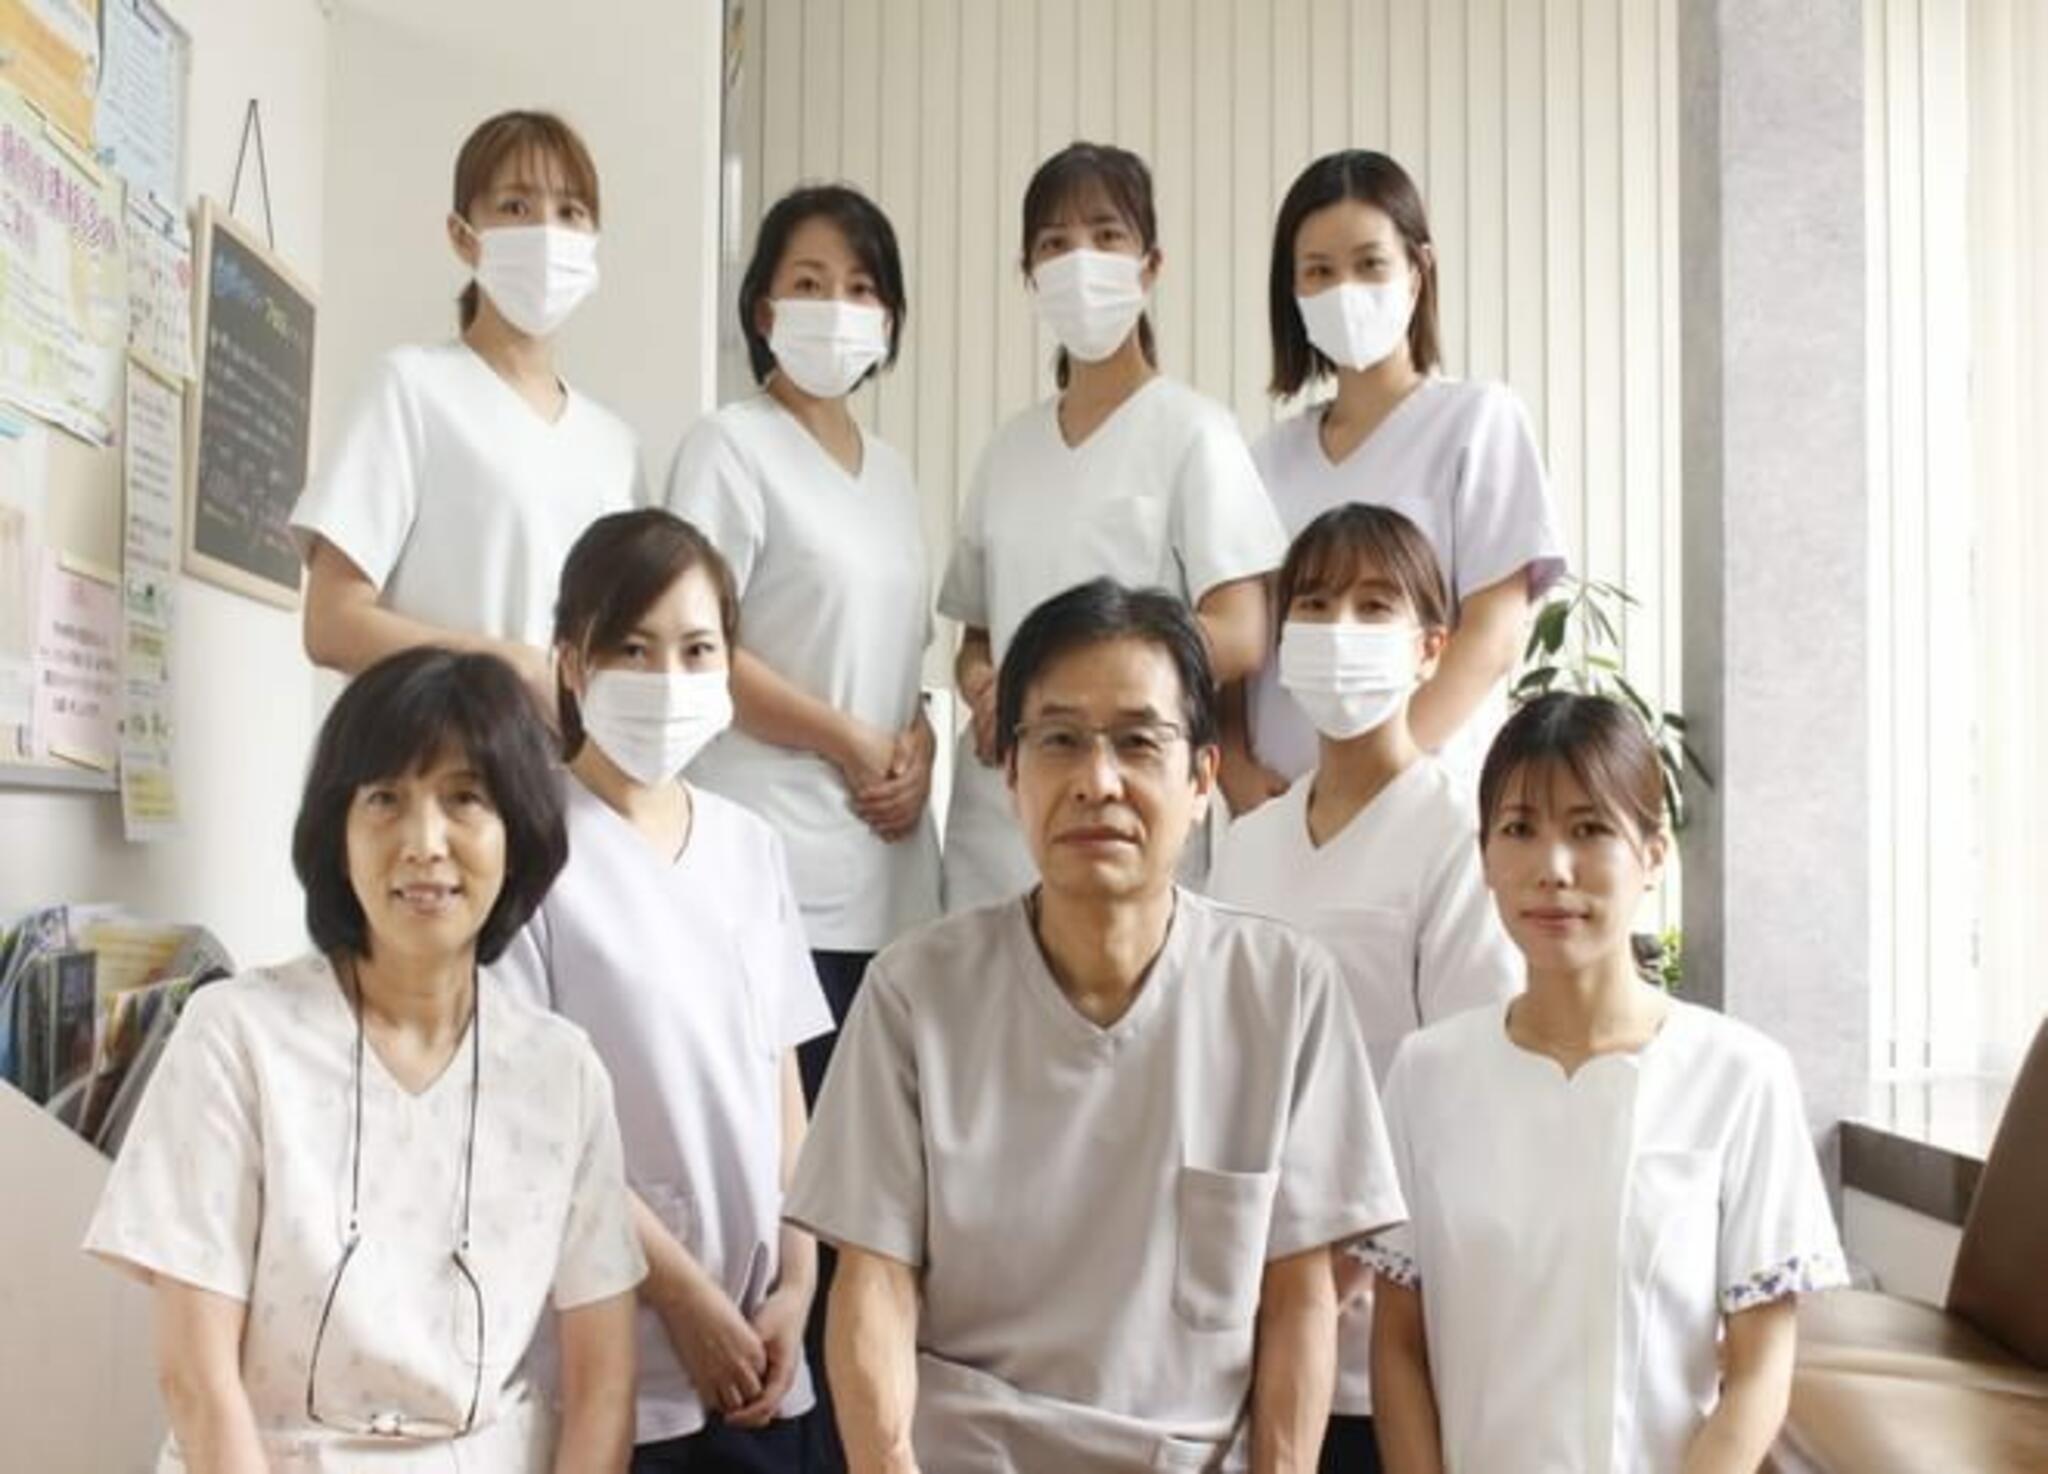 神野歯科医院 - 名古屋市港区正徳町/歯科医院 | Yahoo!マップ